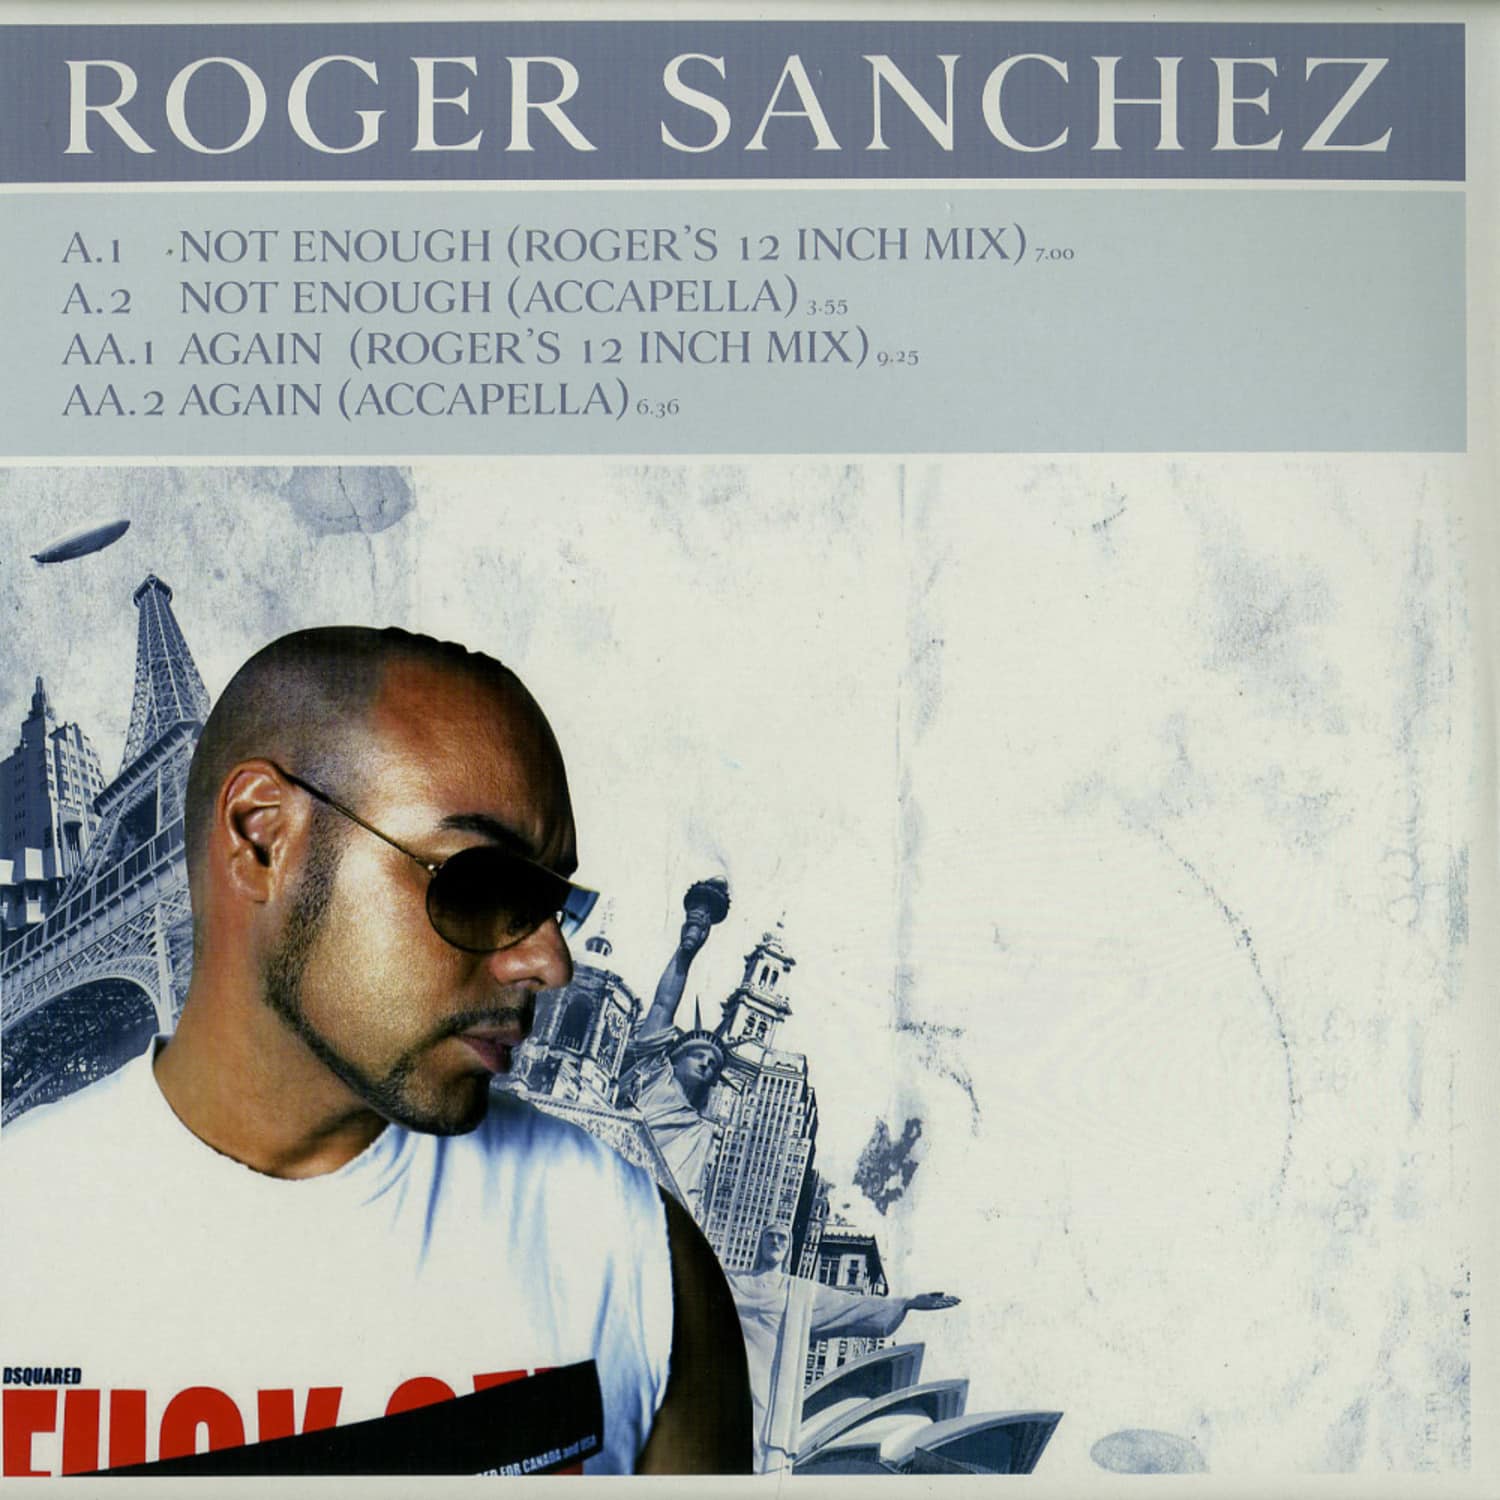 Roger Sanchez - NOT ENOUGH - AGAIN 